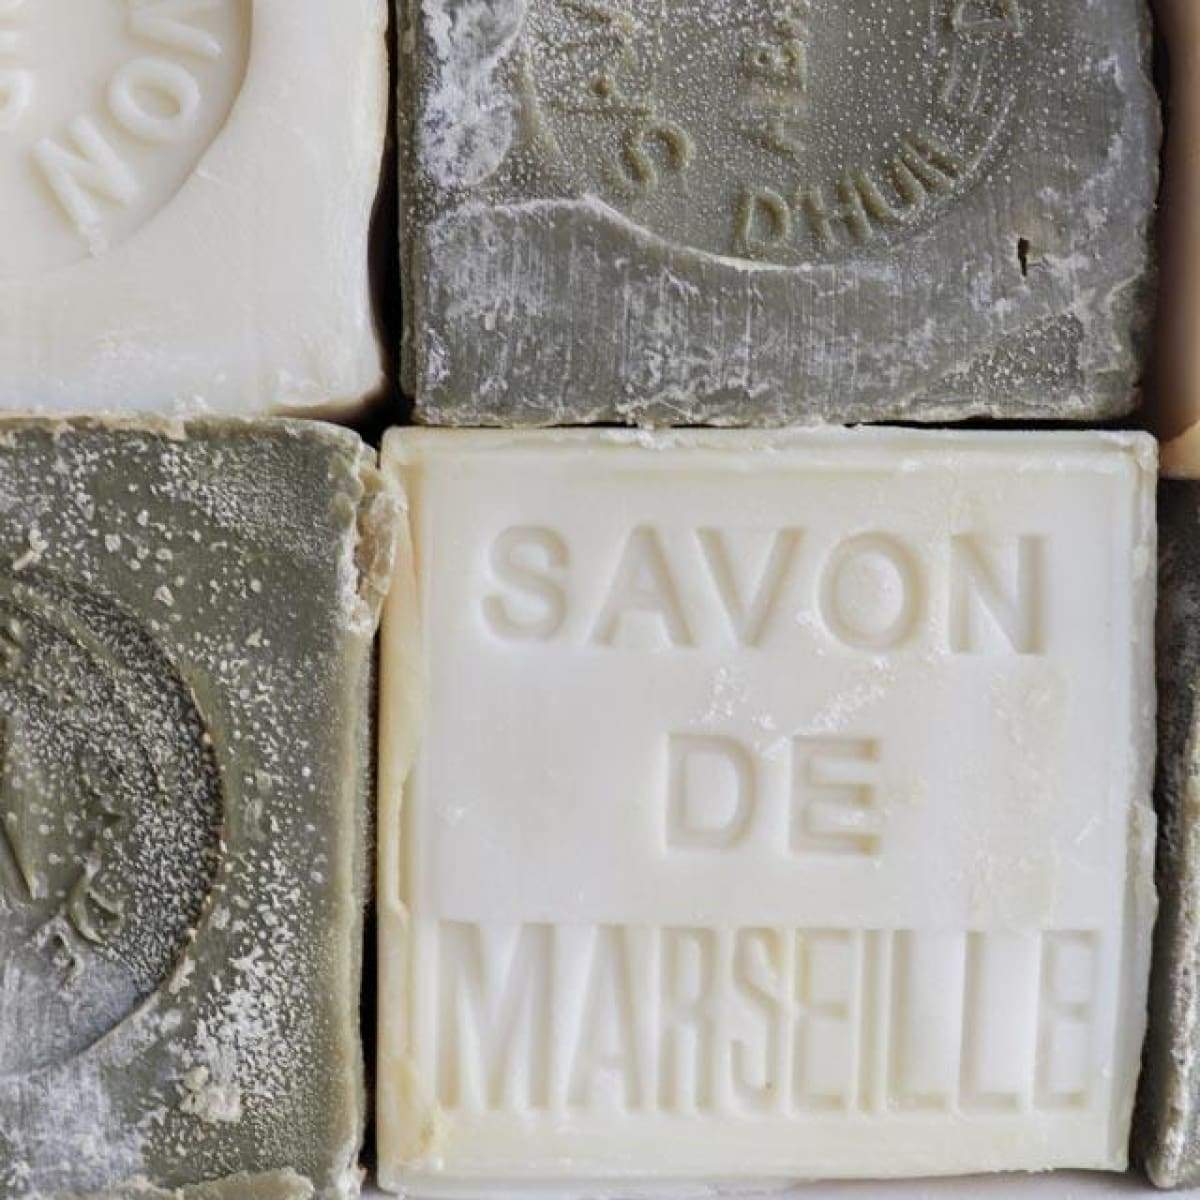 Savon De Marseille - the french kitchen